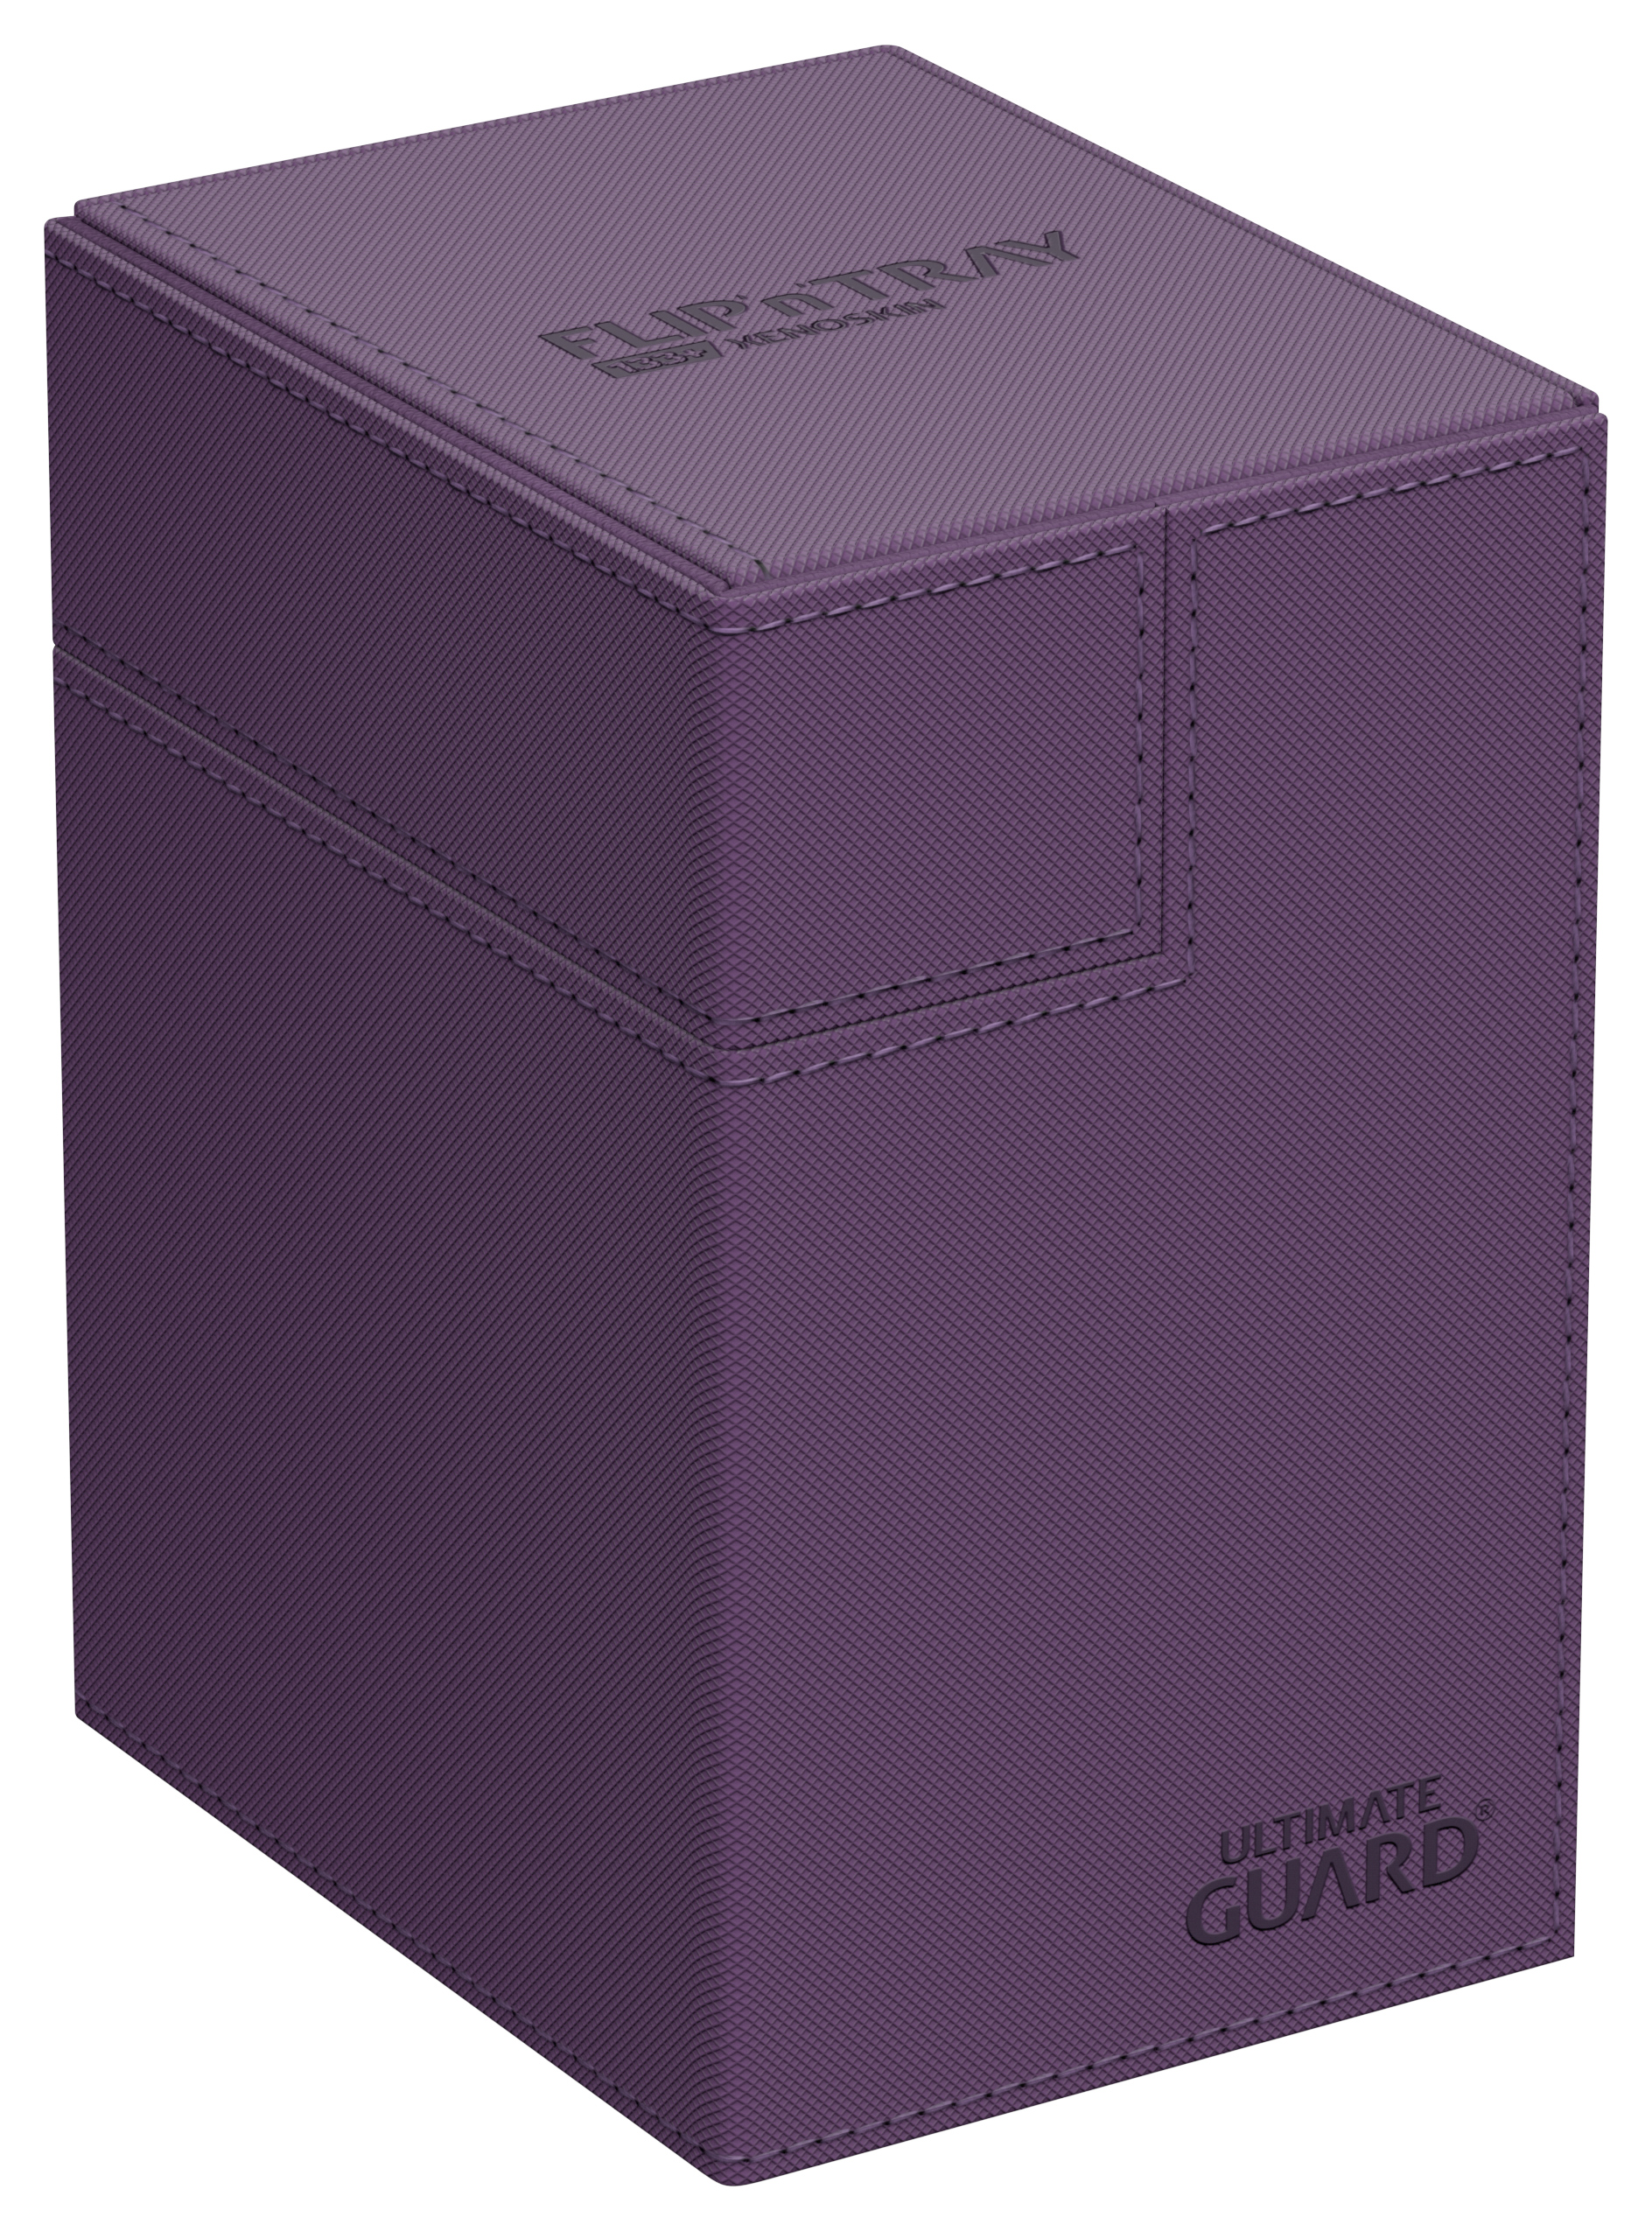 Ultimate Guard: Flip N Tray 133+ Deck Case - Xenoskin Purple 